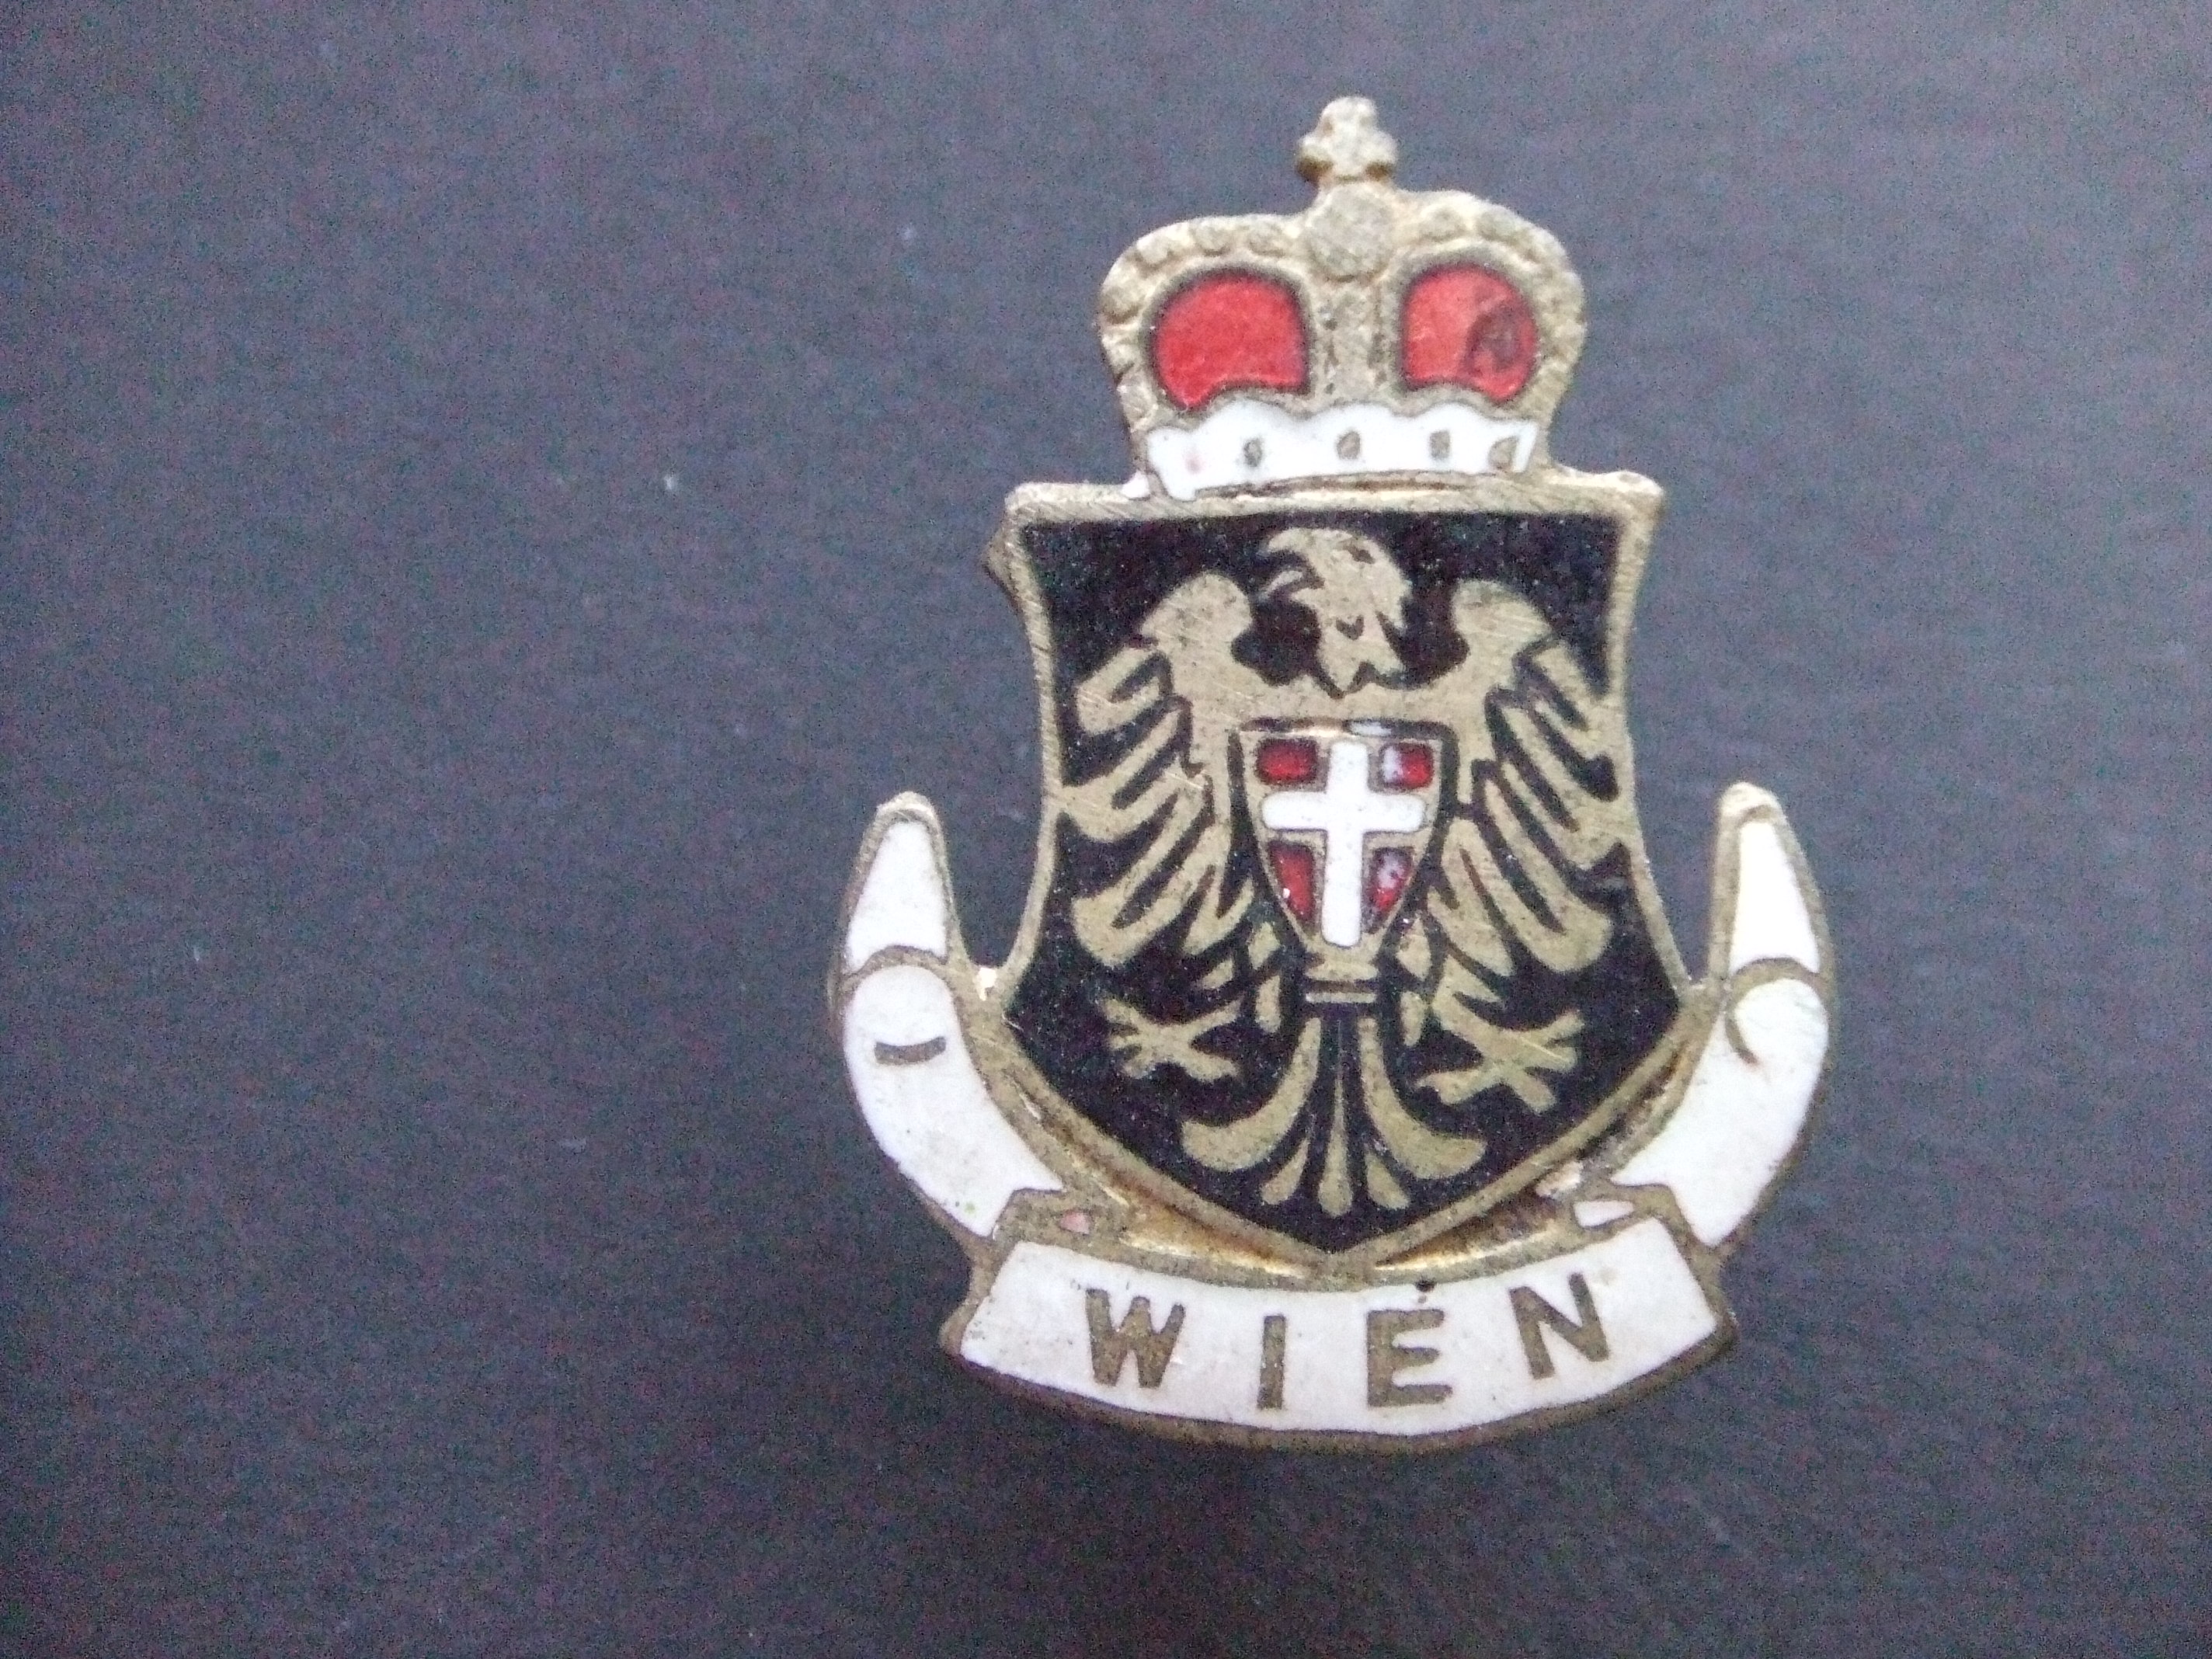 Wenen, (Wien) stad in Oostenrijk stadswapen met kroon